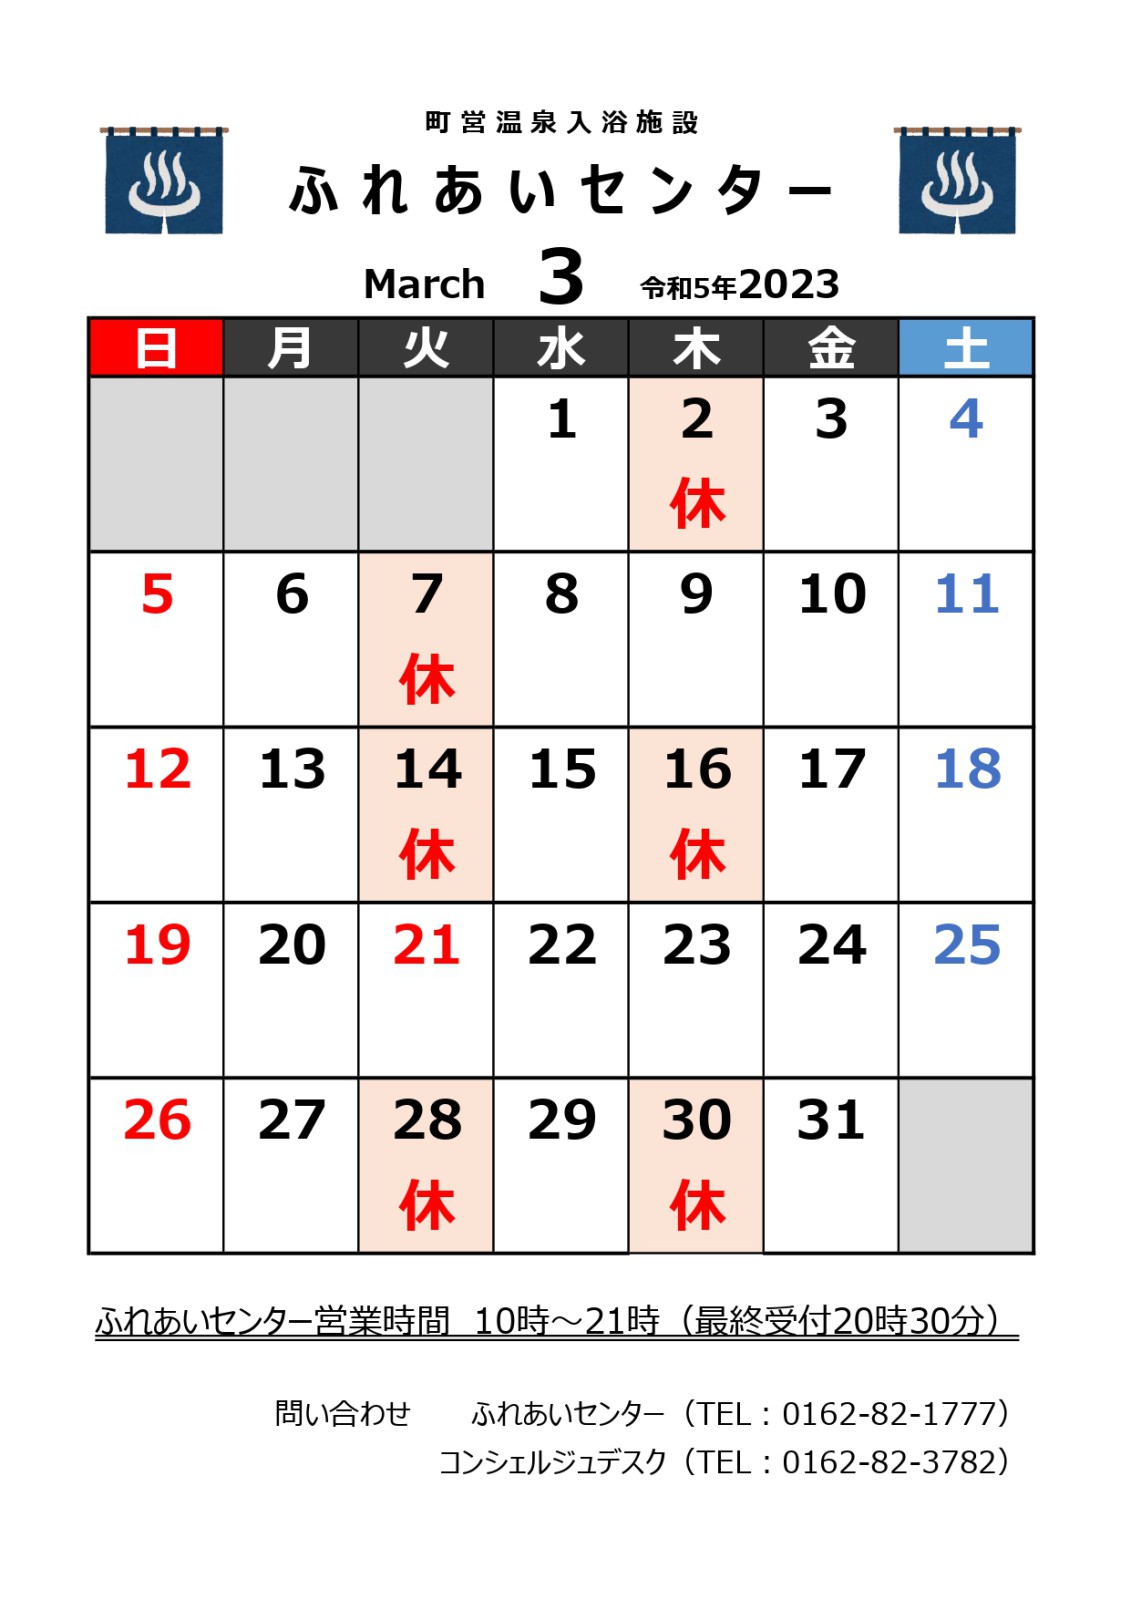 【ふれあいセンター】3月の営業について